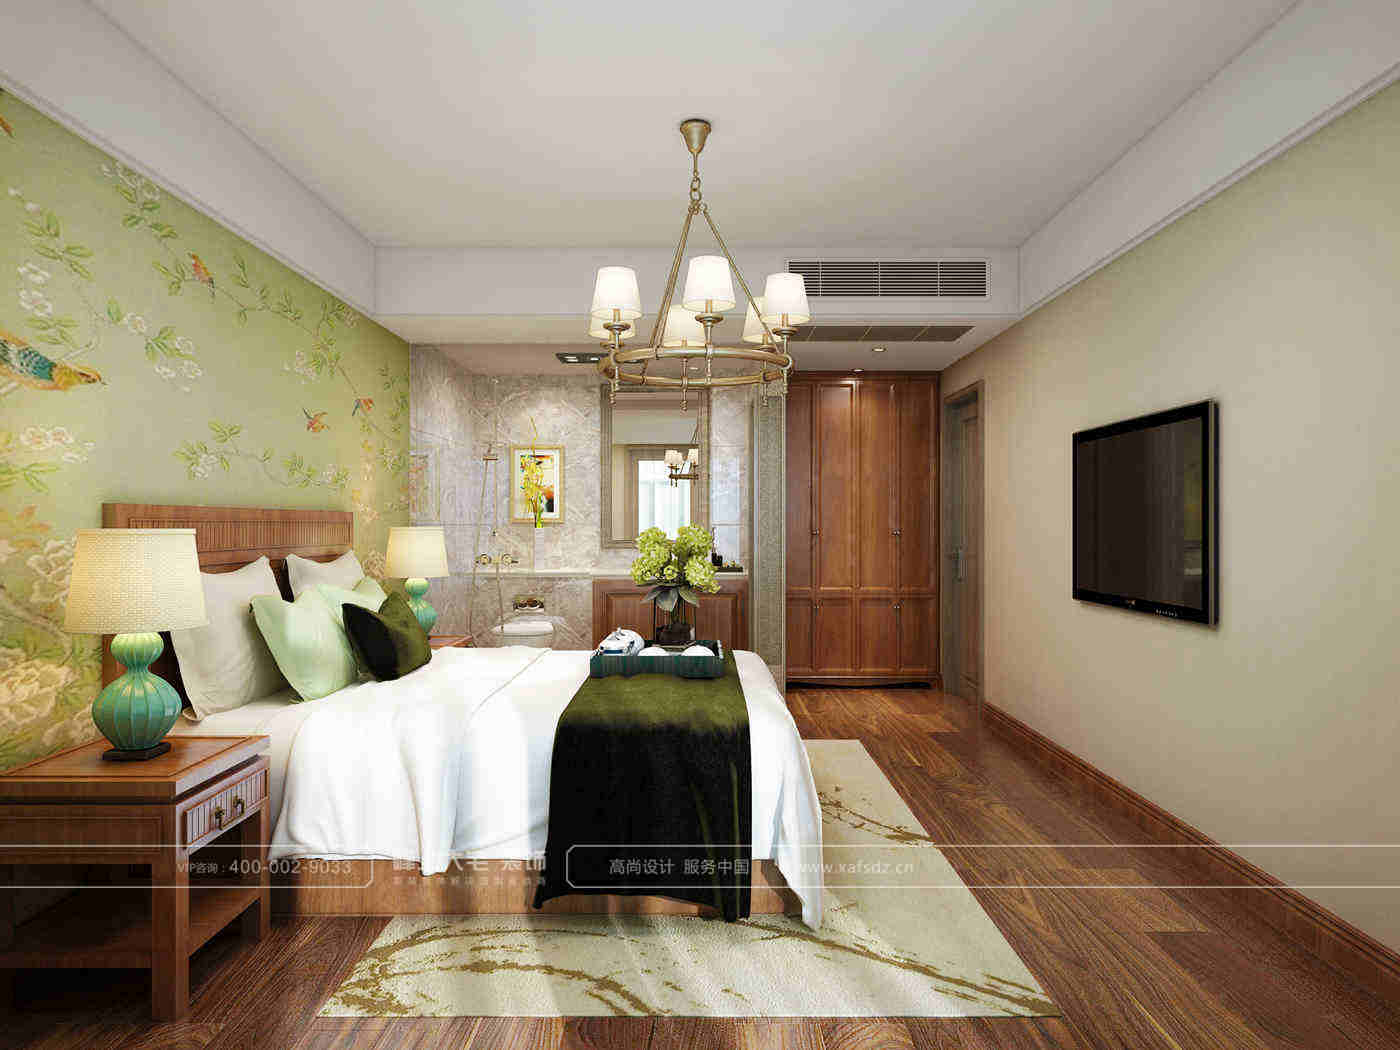 老人房的木色家具和暖色壁纸，既舒适又温馨。